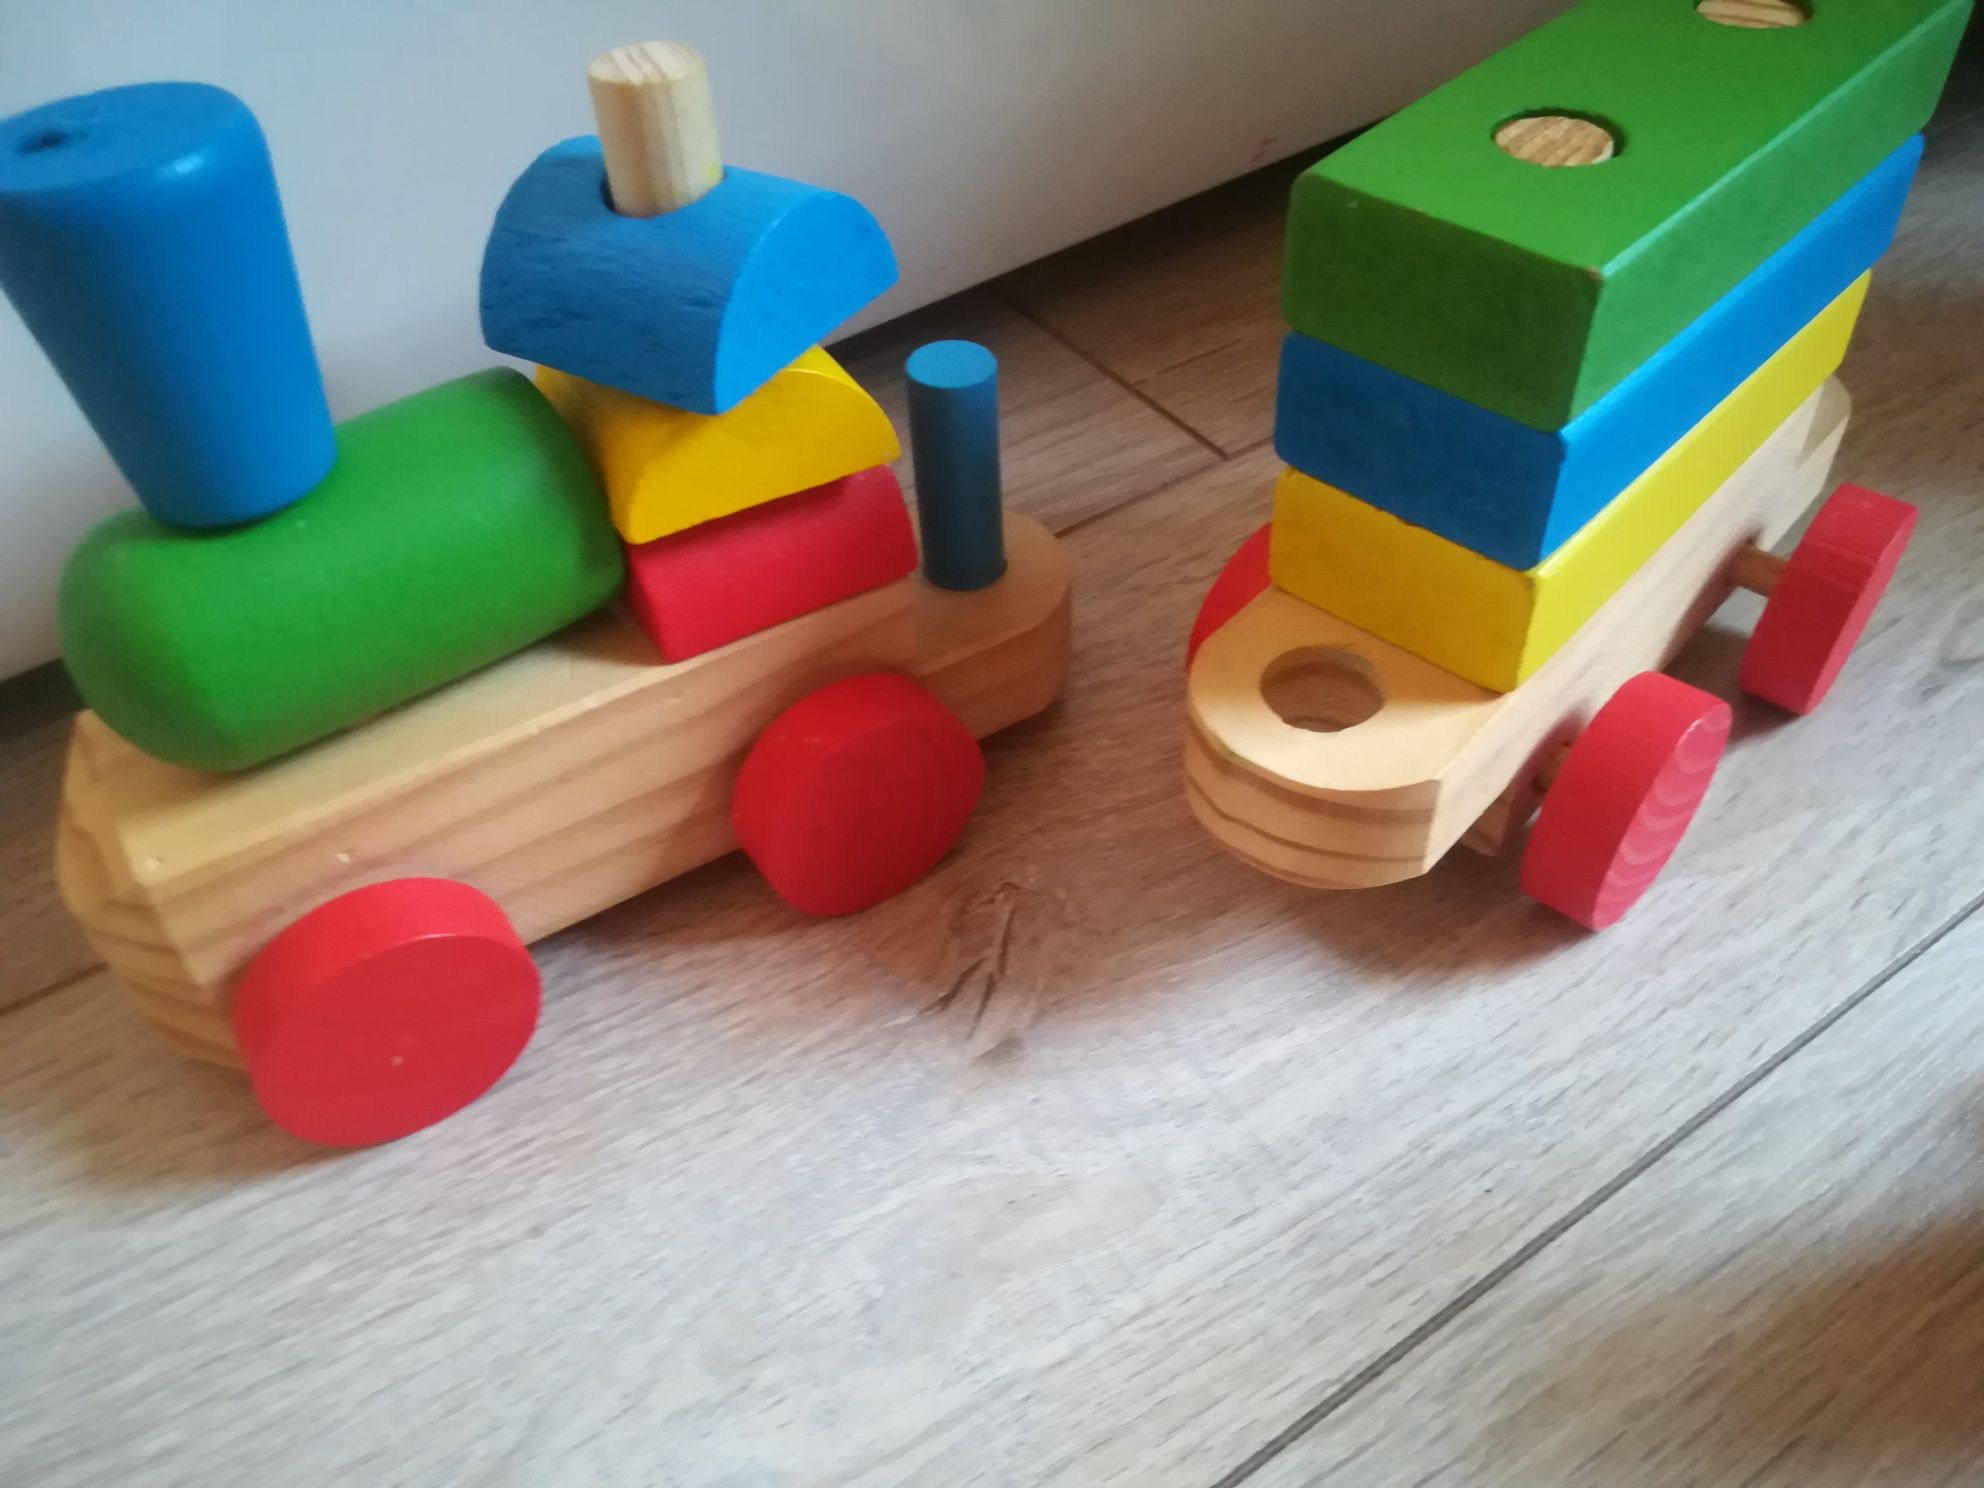 Drewniany pociąg z wagonami i klockami do budowy